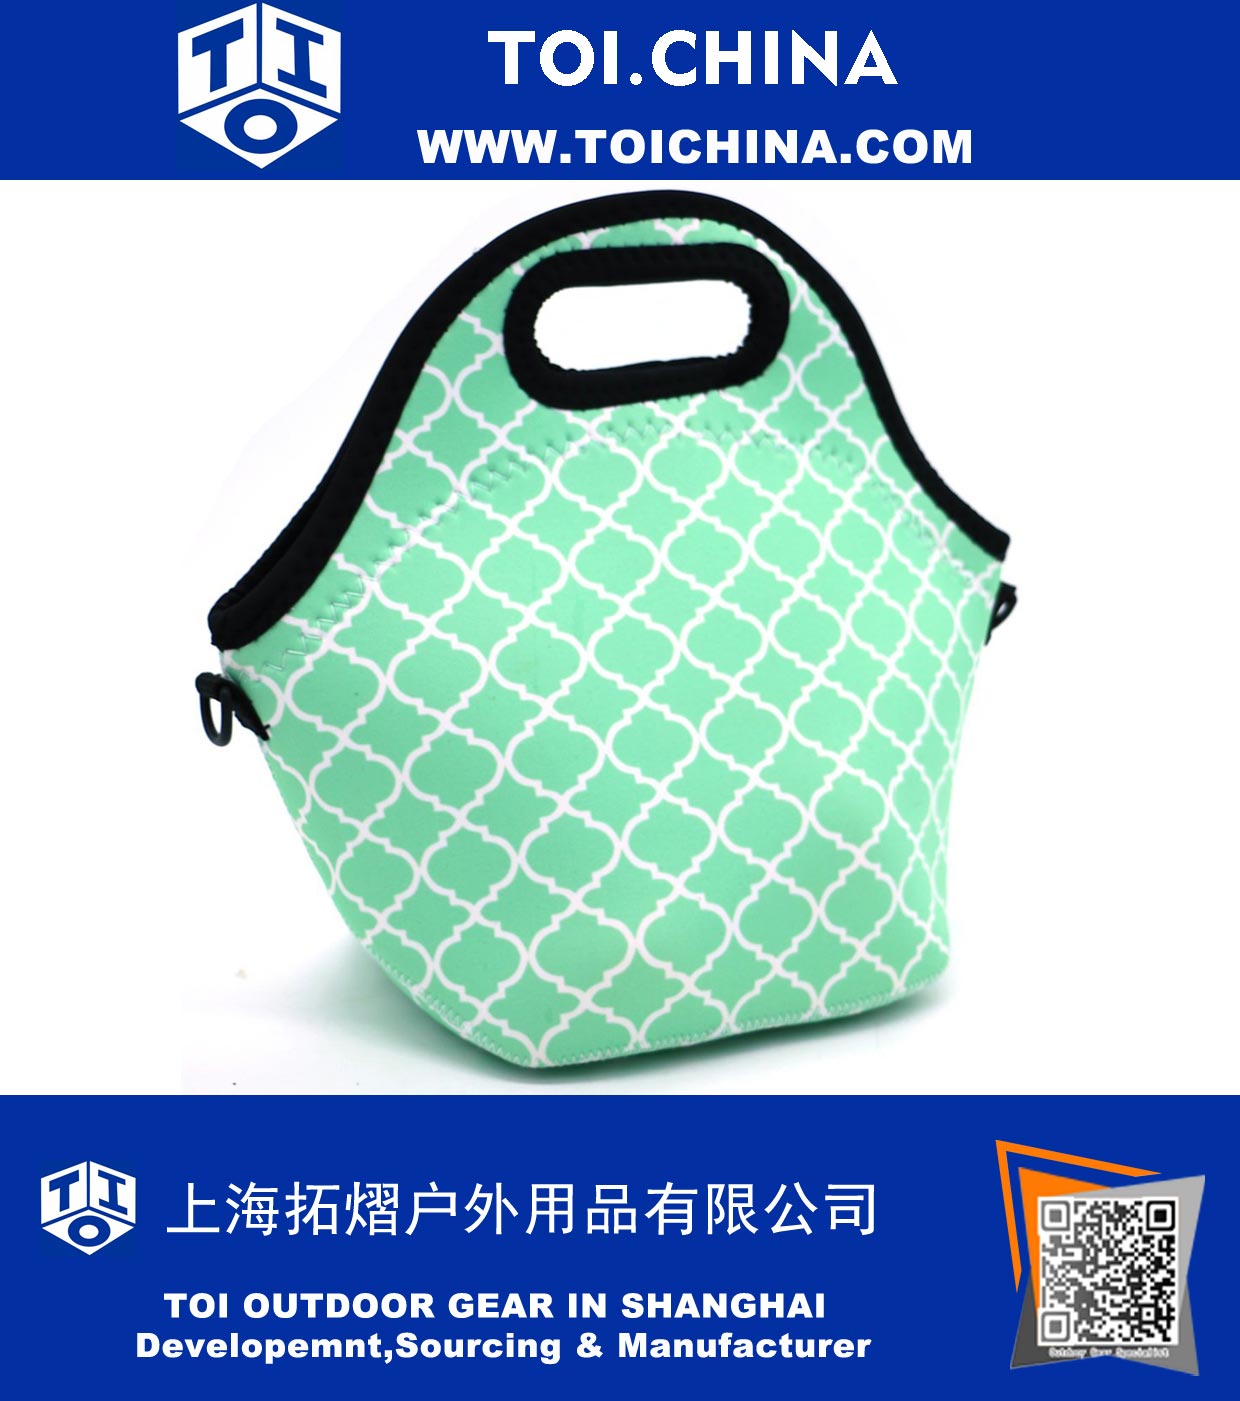 Neoprene Resistente À Água Portátil Lunch Bag Carry Case com Zíper Strap Box Cooler Piquenique Ao Ar Livre de Viagem Moda Bolsa Bolsa para Mulheres Homens Crianças